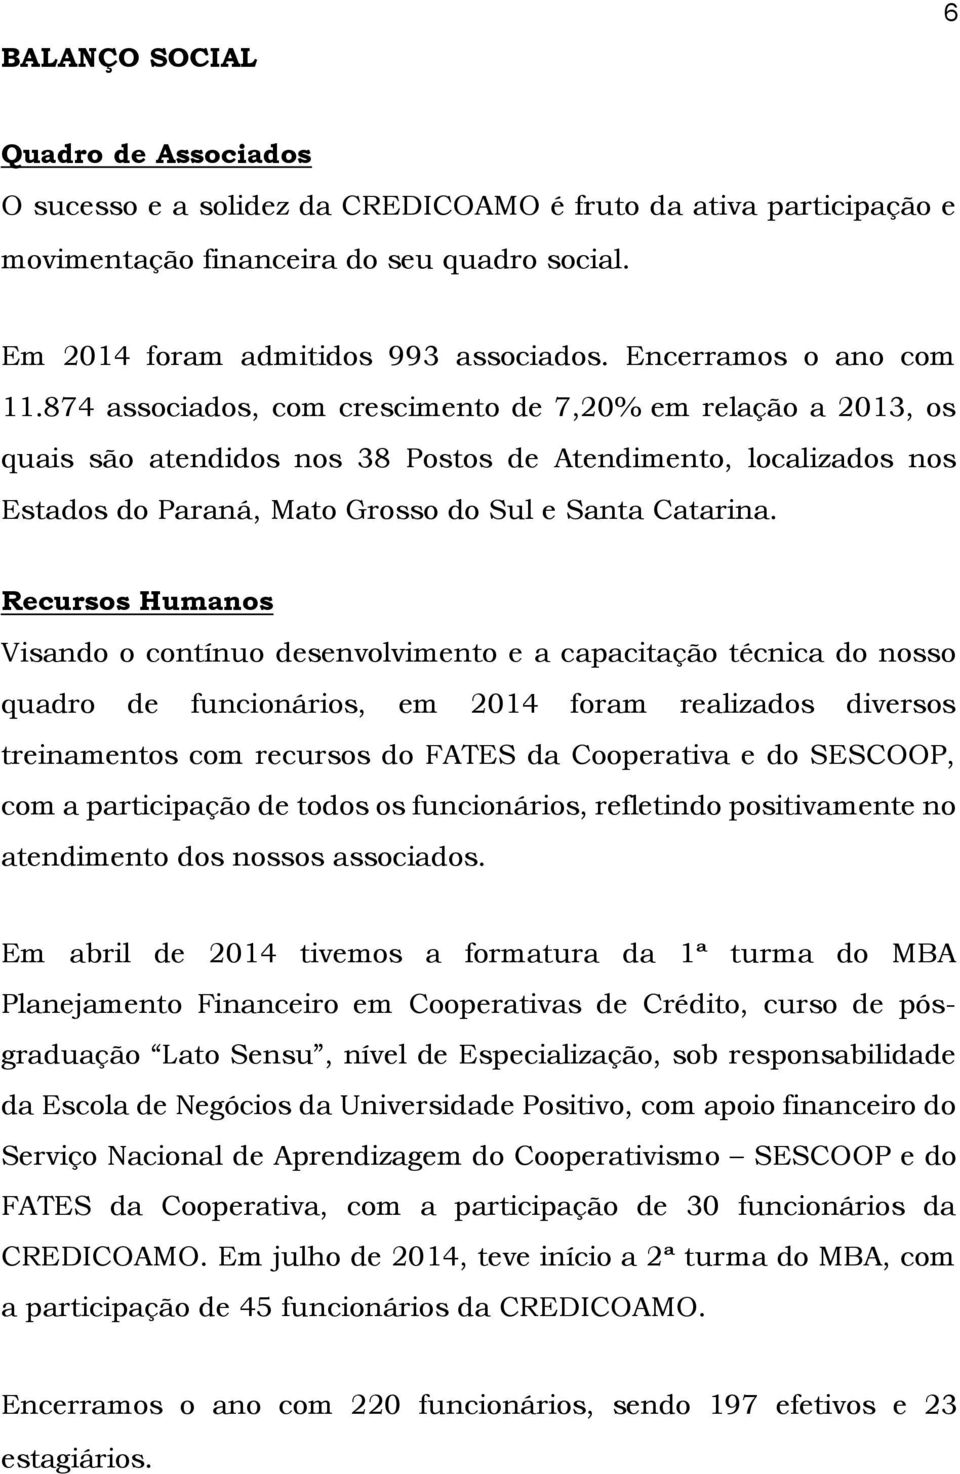 874 associados, com crescimento de 7,20% em relação a 2013, os quais são atendidos nos 38 Postos de Atendimento, localizados nos Estados do Paraná, Mato Grosso do Sul e Santa Catarina.